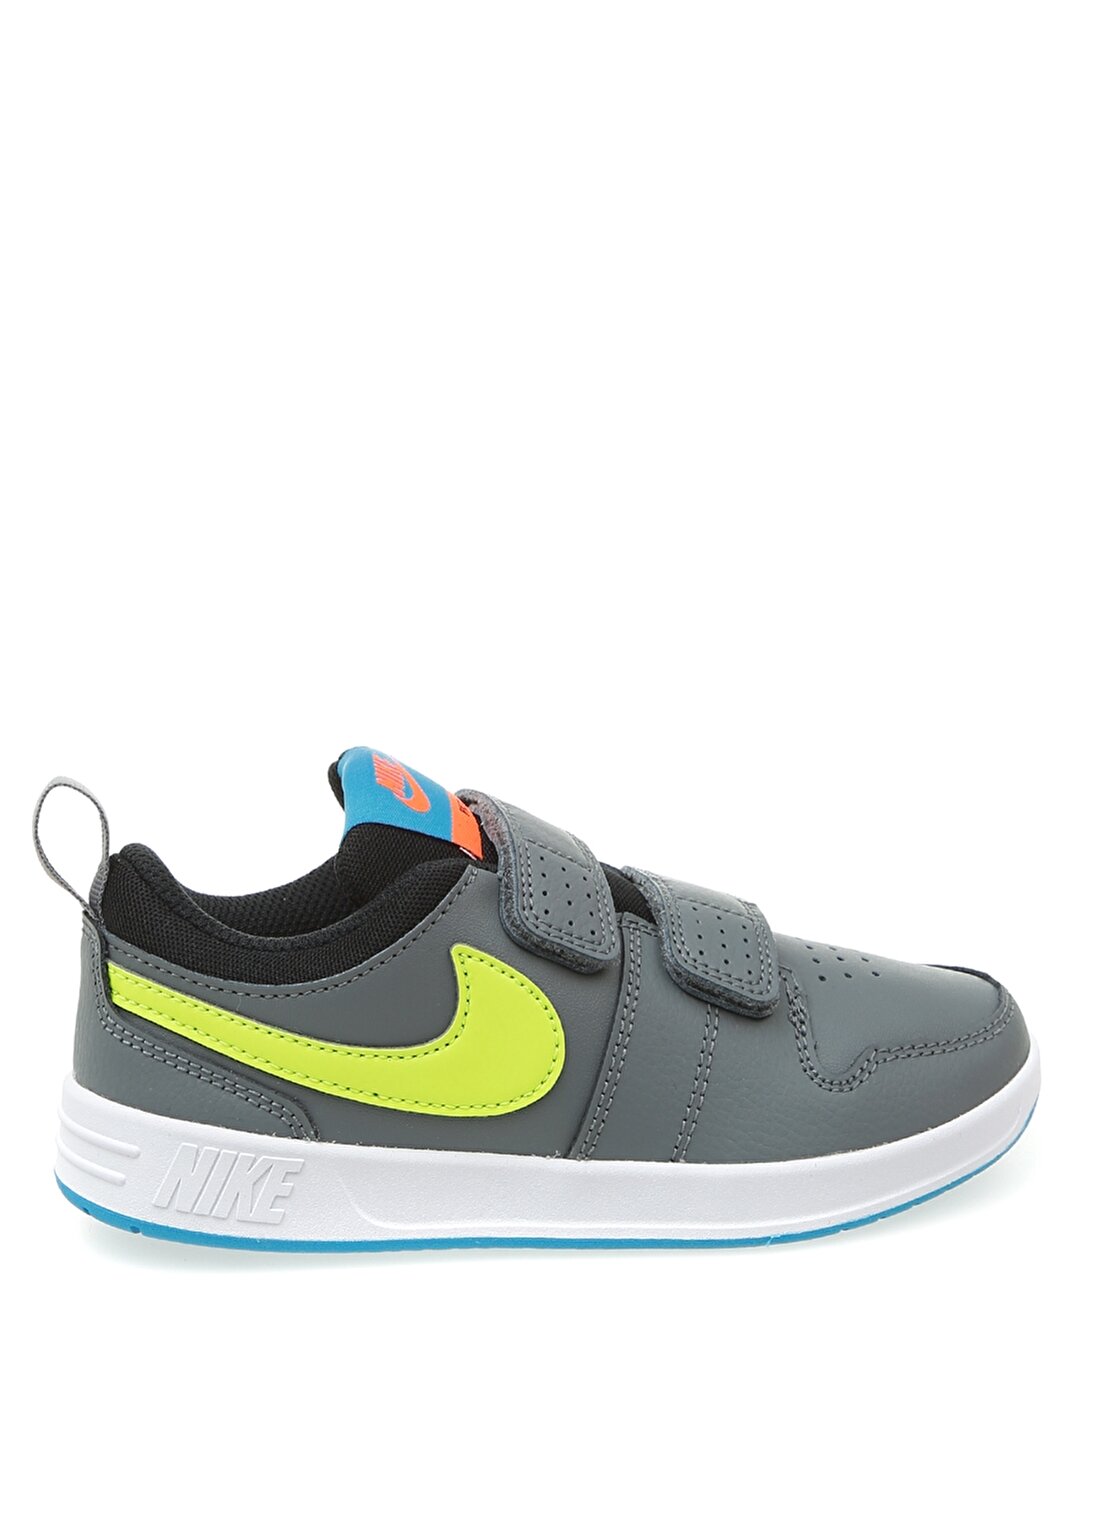 Nike Pico 5 Bebek Yürüyüş Ayakkabısı